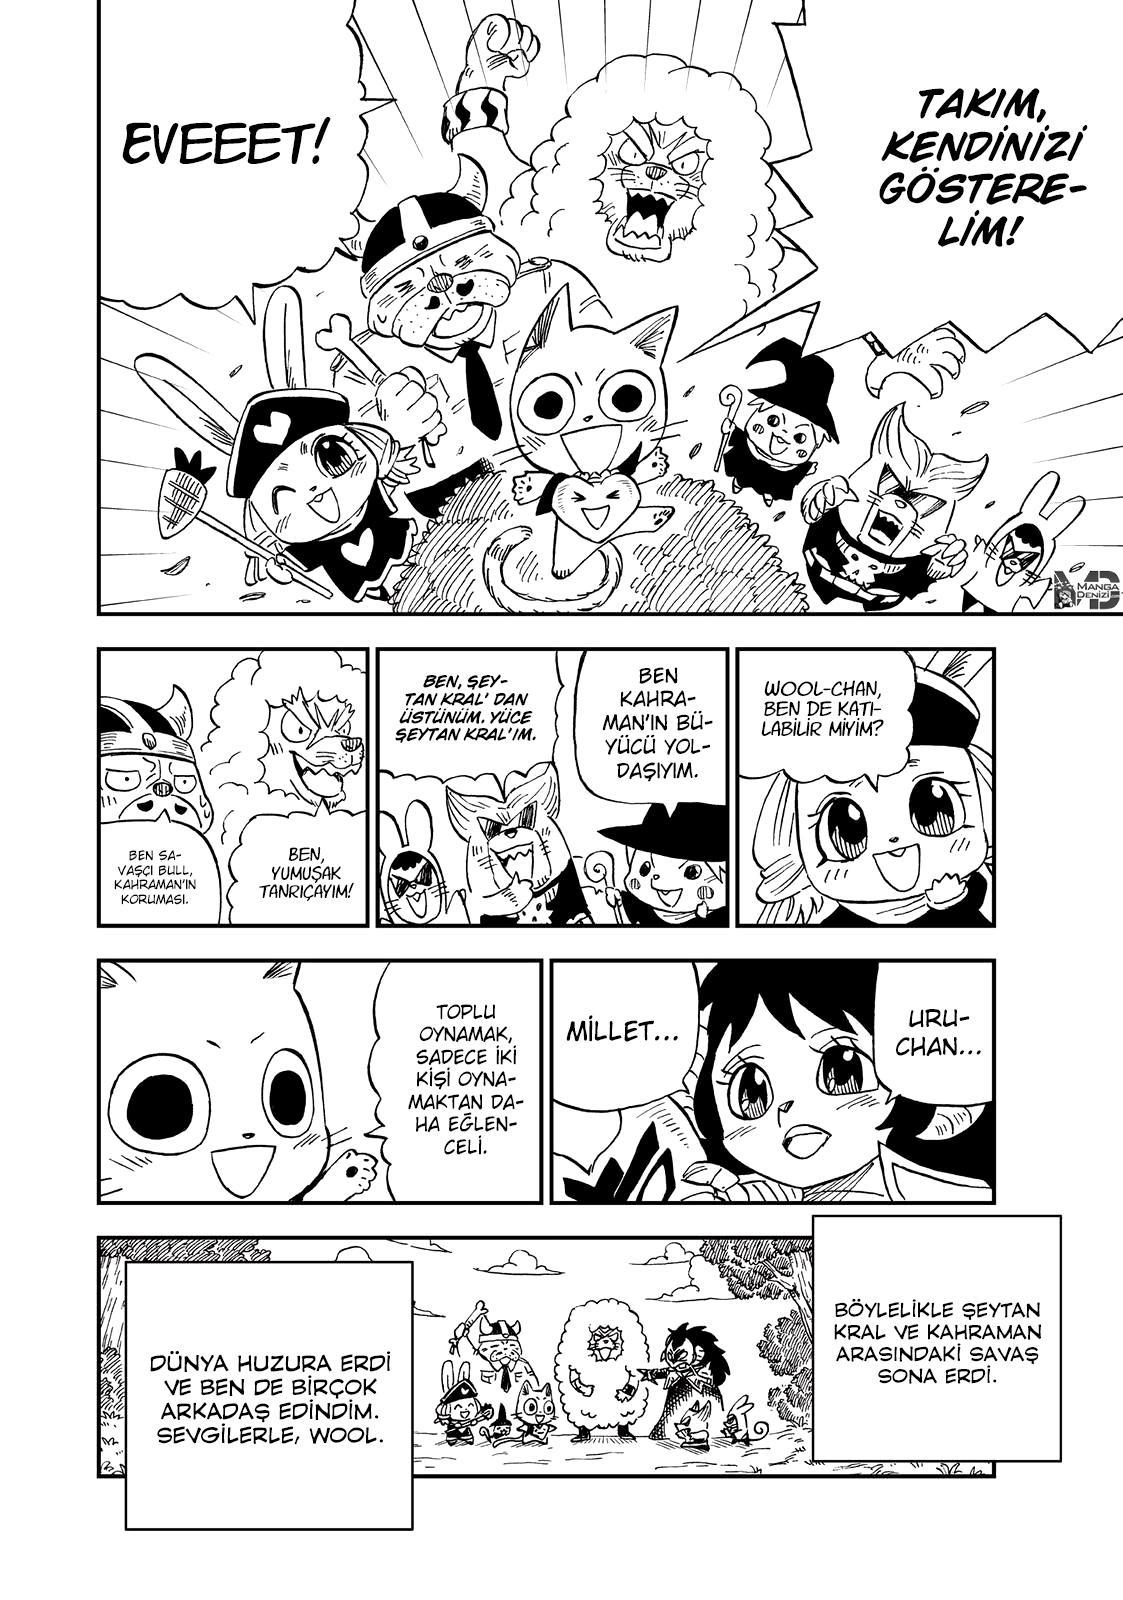 Fairy Tail: Happy's Great Adventure mangasının 60.5 bölümünün 3. sayfasını okuyorsunuz.